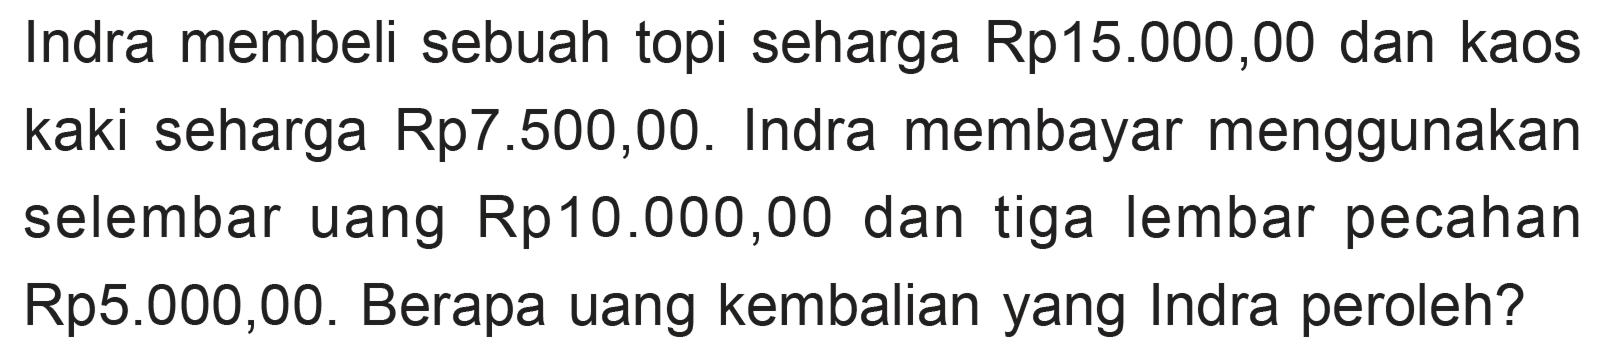 Indra membeli sebuah topi seharga Rp15.000,00 dan kaos kaki seharga Rp7.500,00. Indra membayar menggunakan selembar uang Rp10.000,00 dan tiga lembar pecahan Rp5.000,00. Berapa uang kembalian yang Indra peroleh?